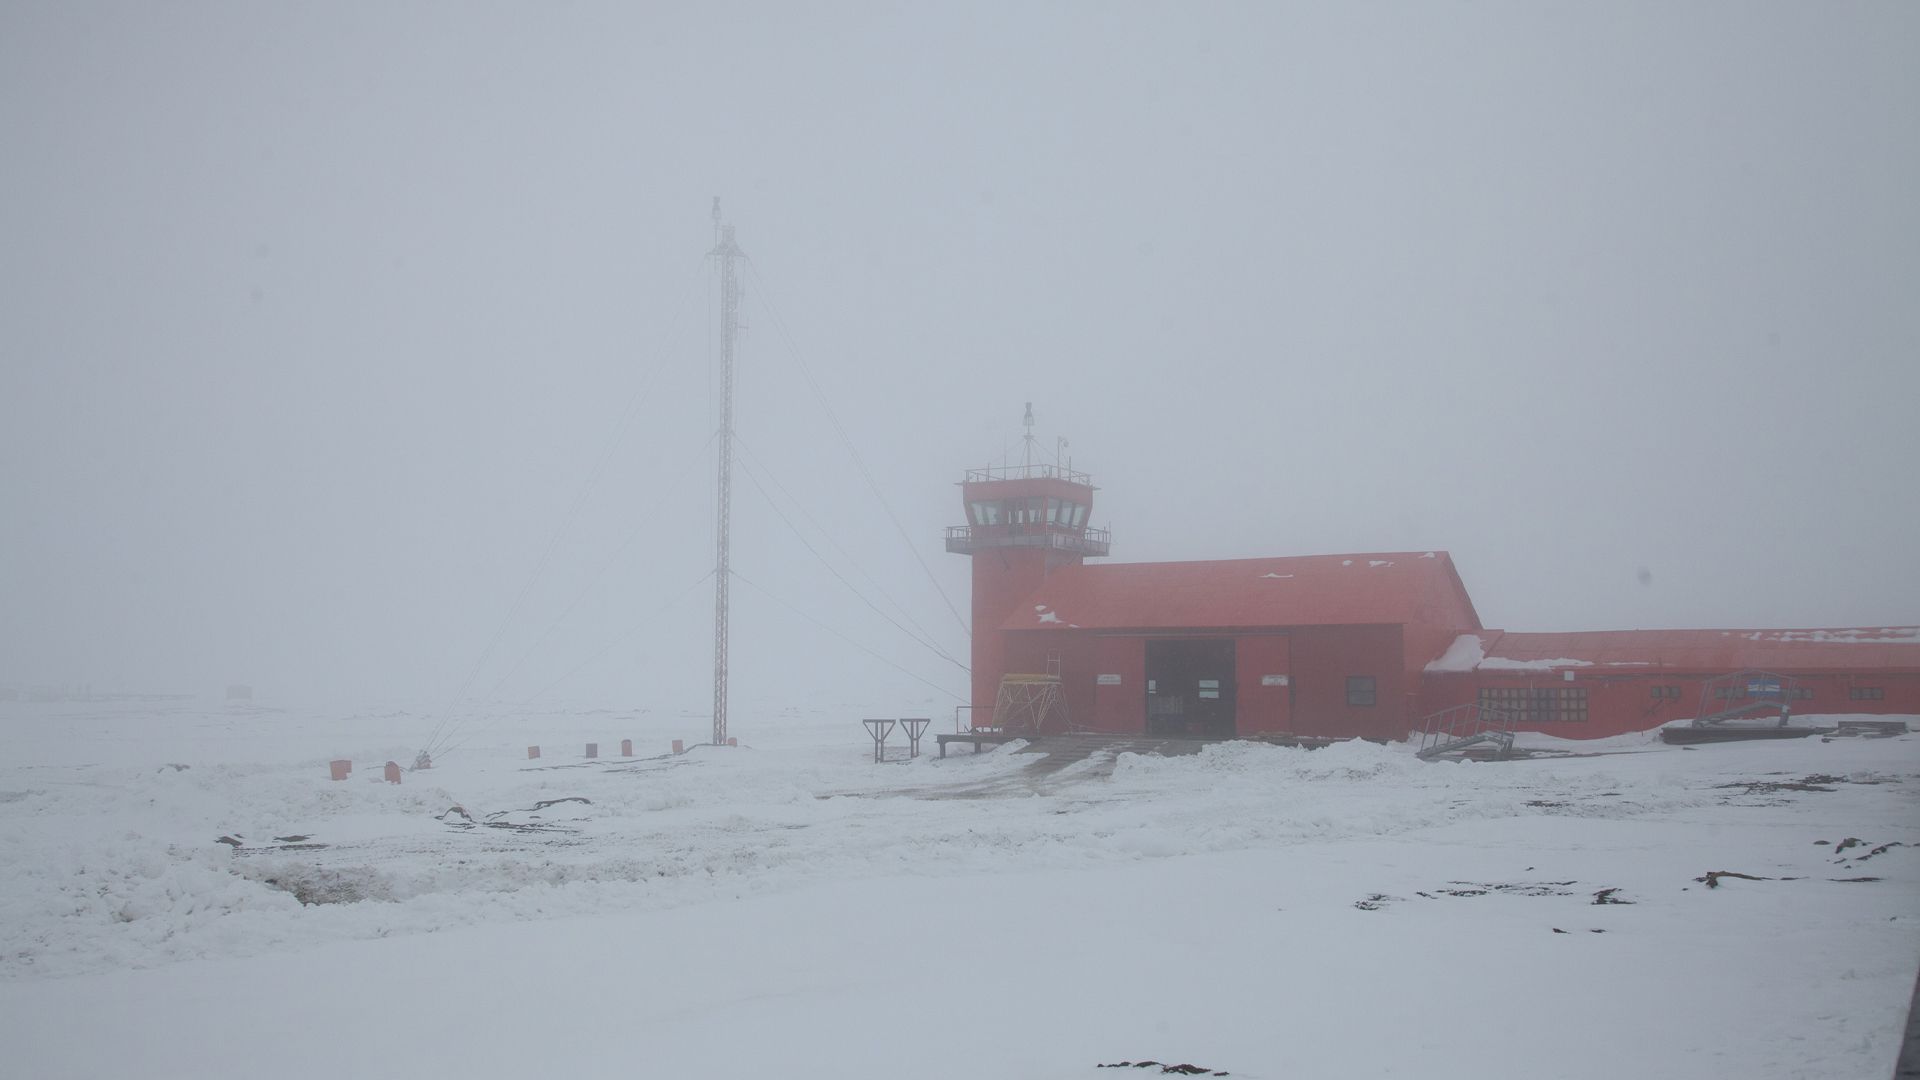 La meteorología de la Antártida es muy compleja y hay algunos fenómenos difíciles de pronosticar. (Martín Gallino)